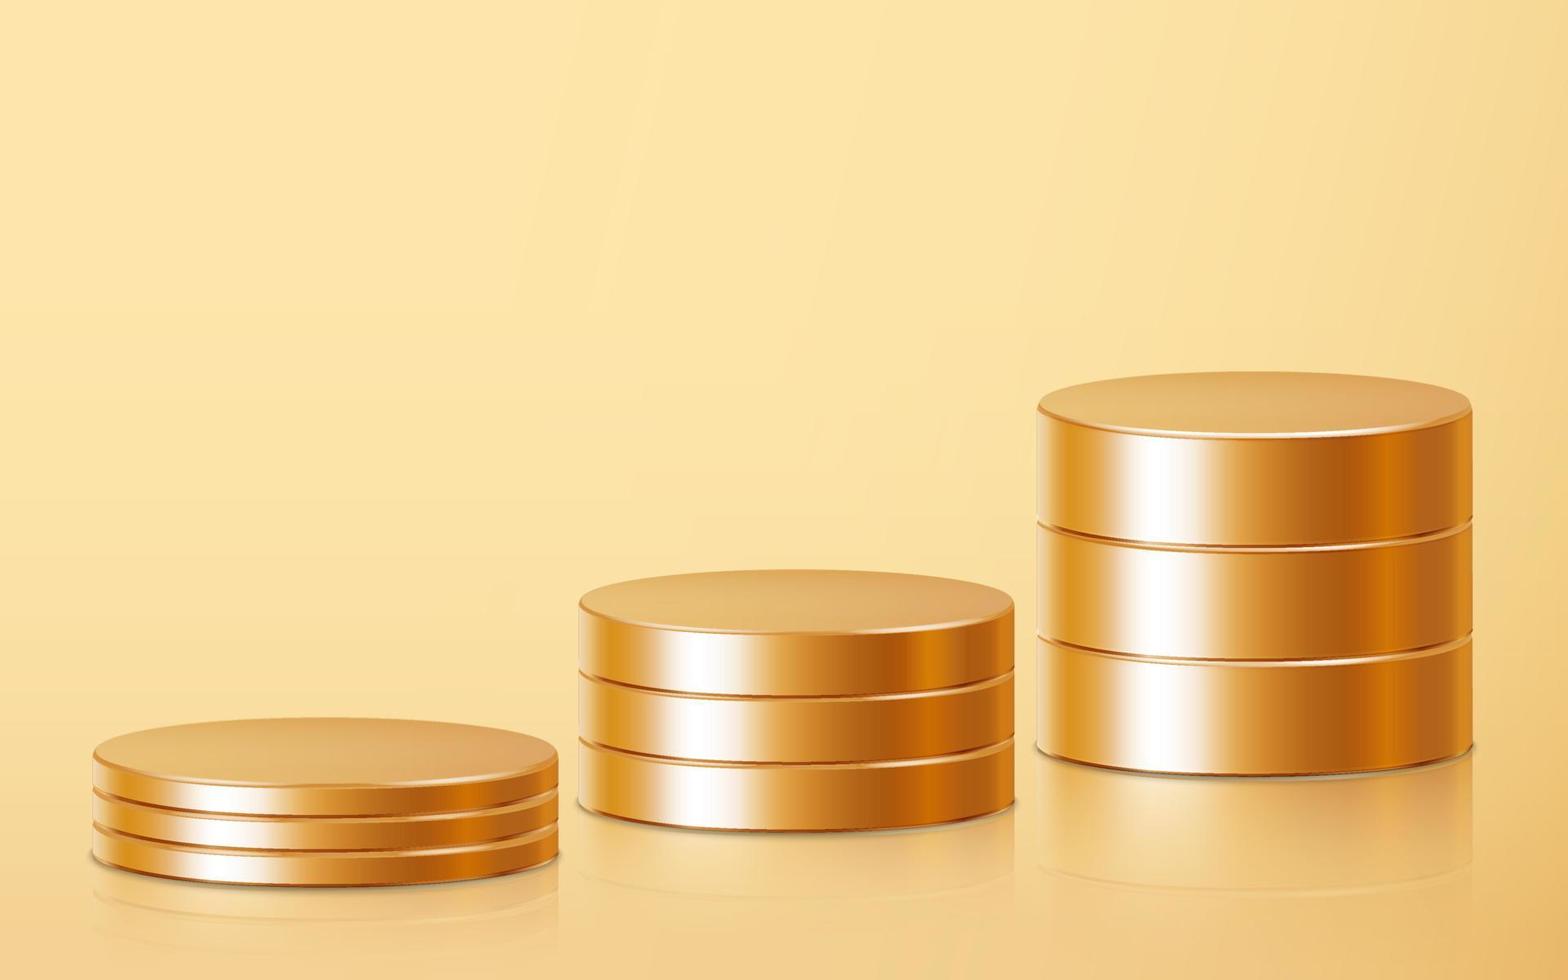 realistische podiumsszene mit drei goldenen leeren produktstapeln isoliert auf goldenem hintergrund. geometrische metallische runde form für das produktbranding. Goldzylinder-Mock-up-Szene. 3D-Vektor-Illustration-Hintergrund vektor